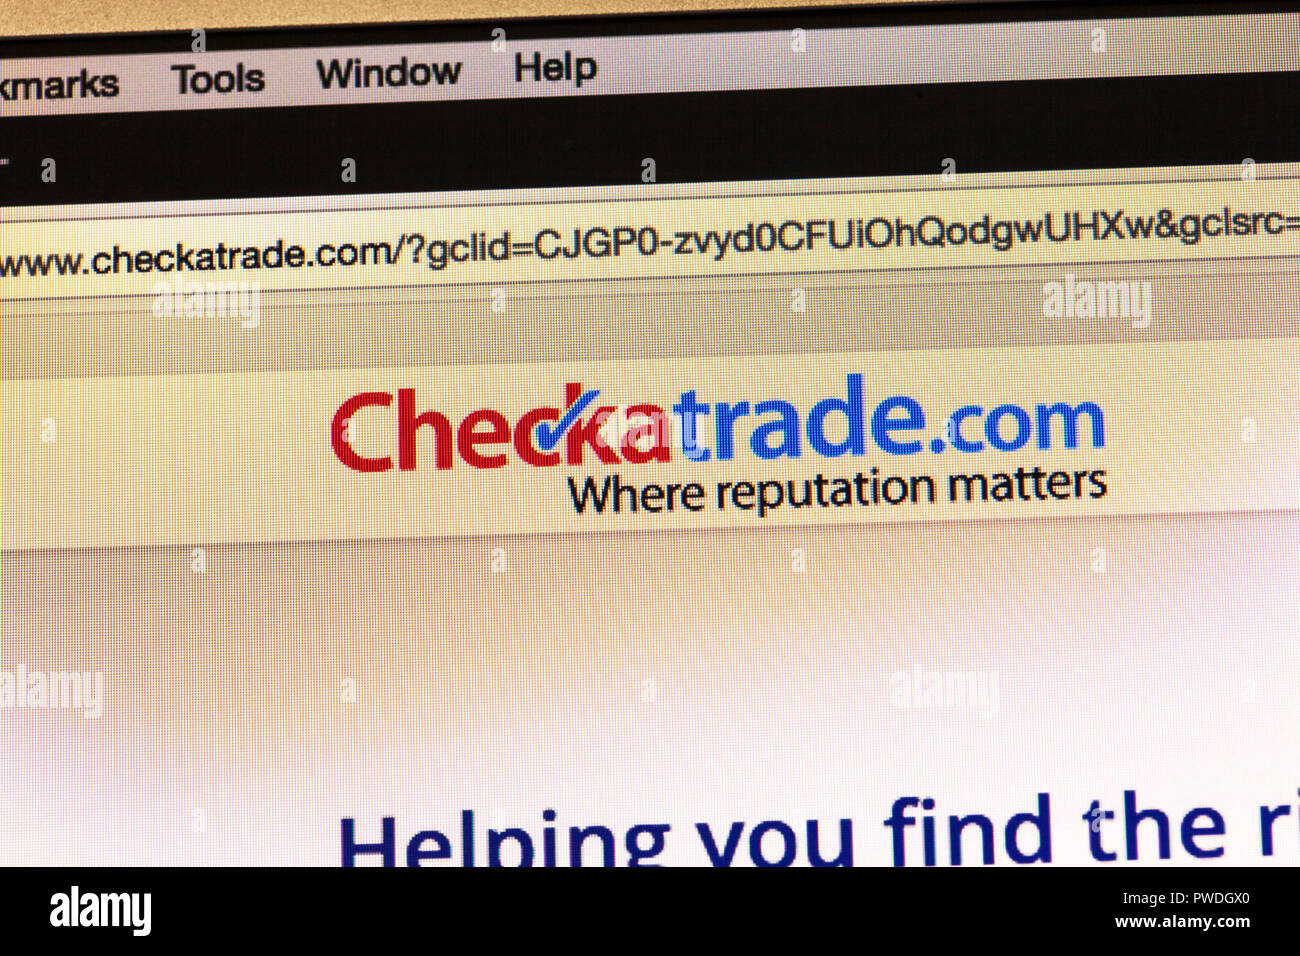 Checkatrade.com site pour trouver des artisans, trouver un commerçant, Checkatrade Checkatrade.com, Checkatrade.com, site web, logo, Checkatrade.com Page d'accueil Banque D'Images